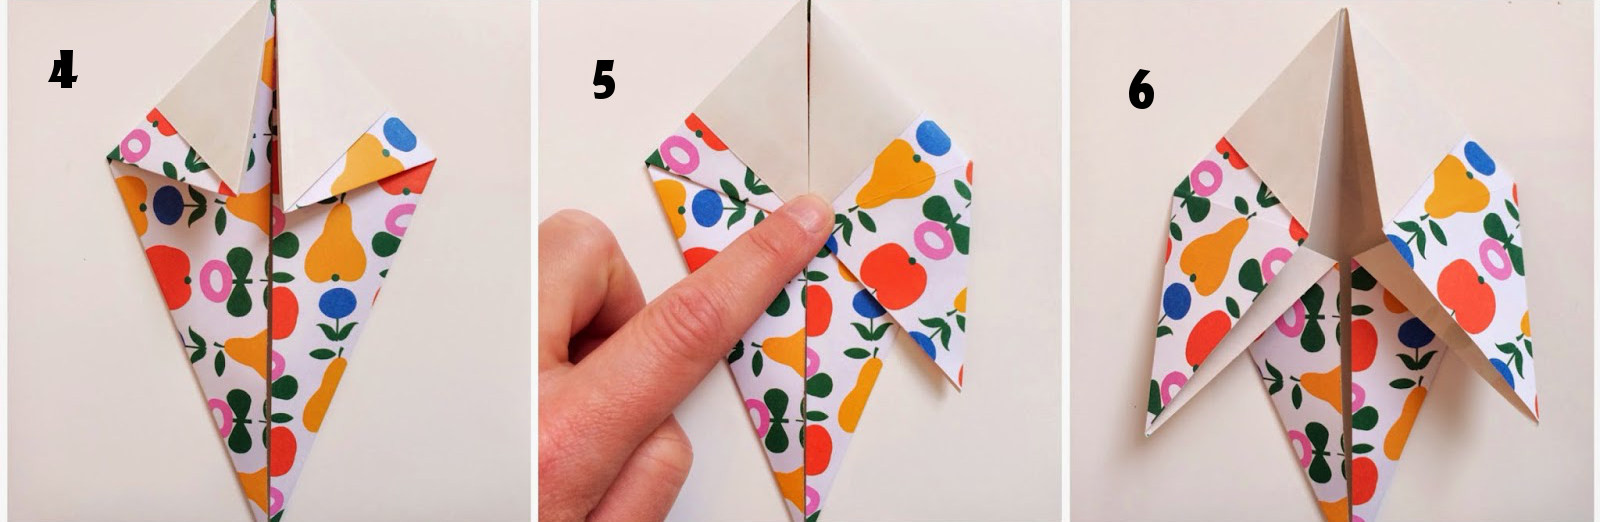 Cara Membuat Origami Burung Merpati Paling Mudah Bikin 